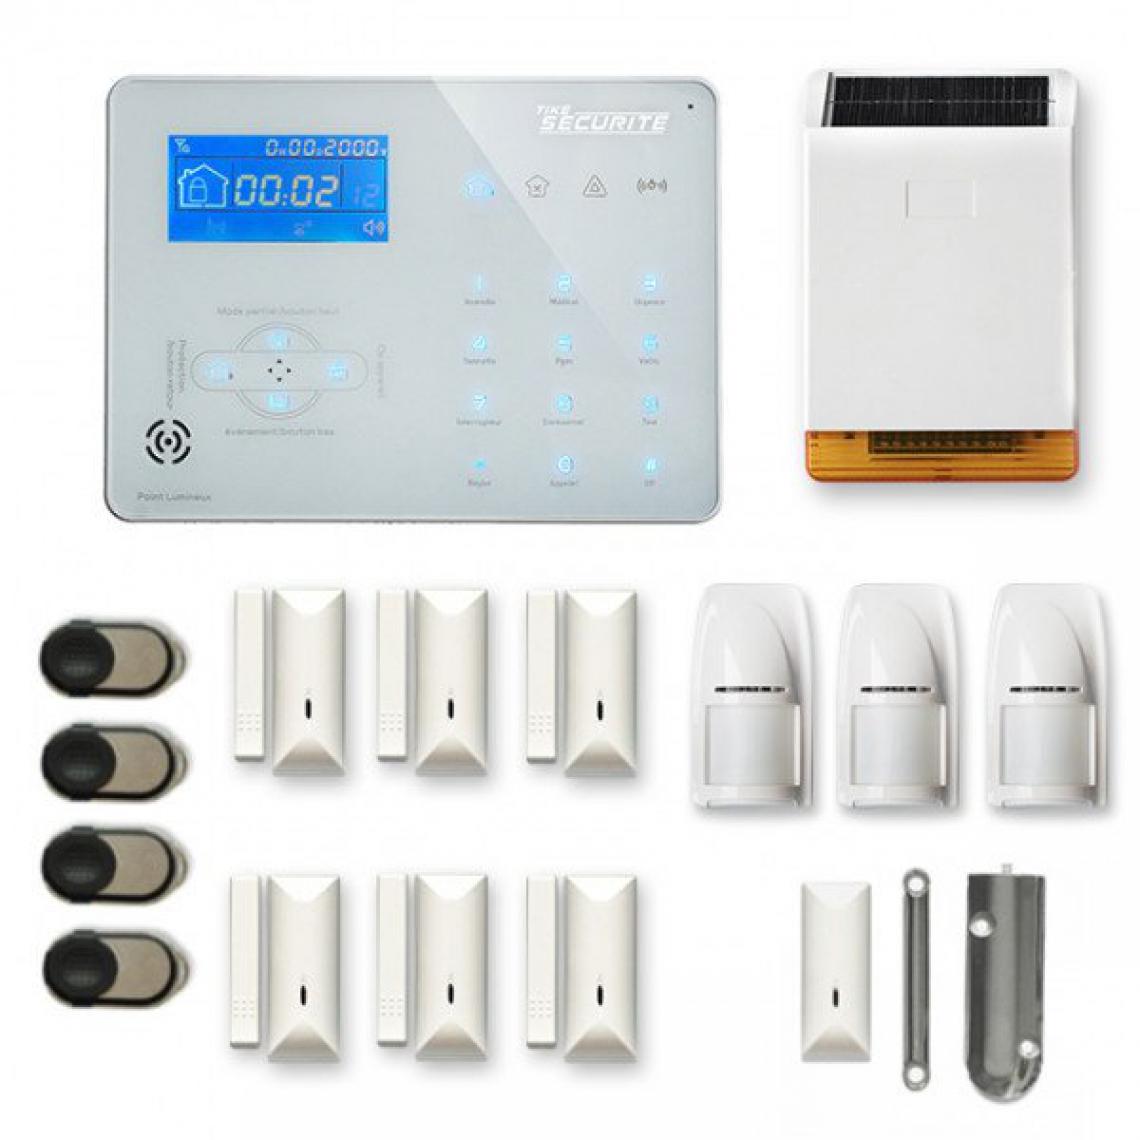 Tike Securite - Alarme maison sans fil ICE-B47 Compatible Box internet et GSM - Alarme connectée